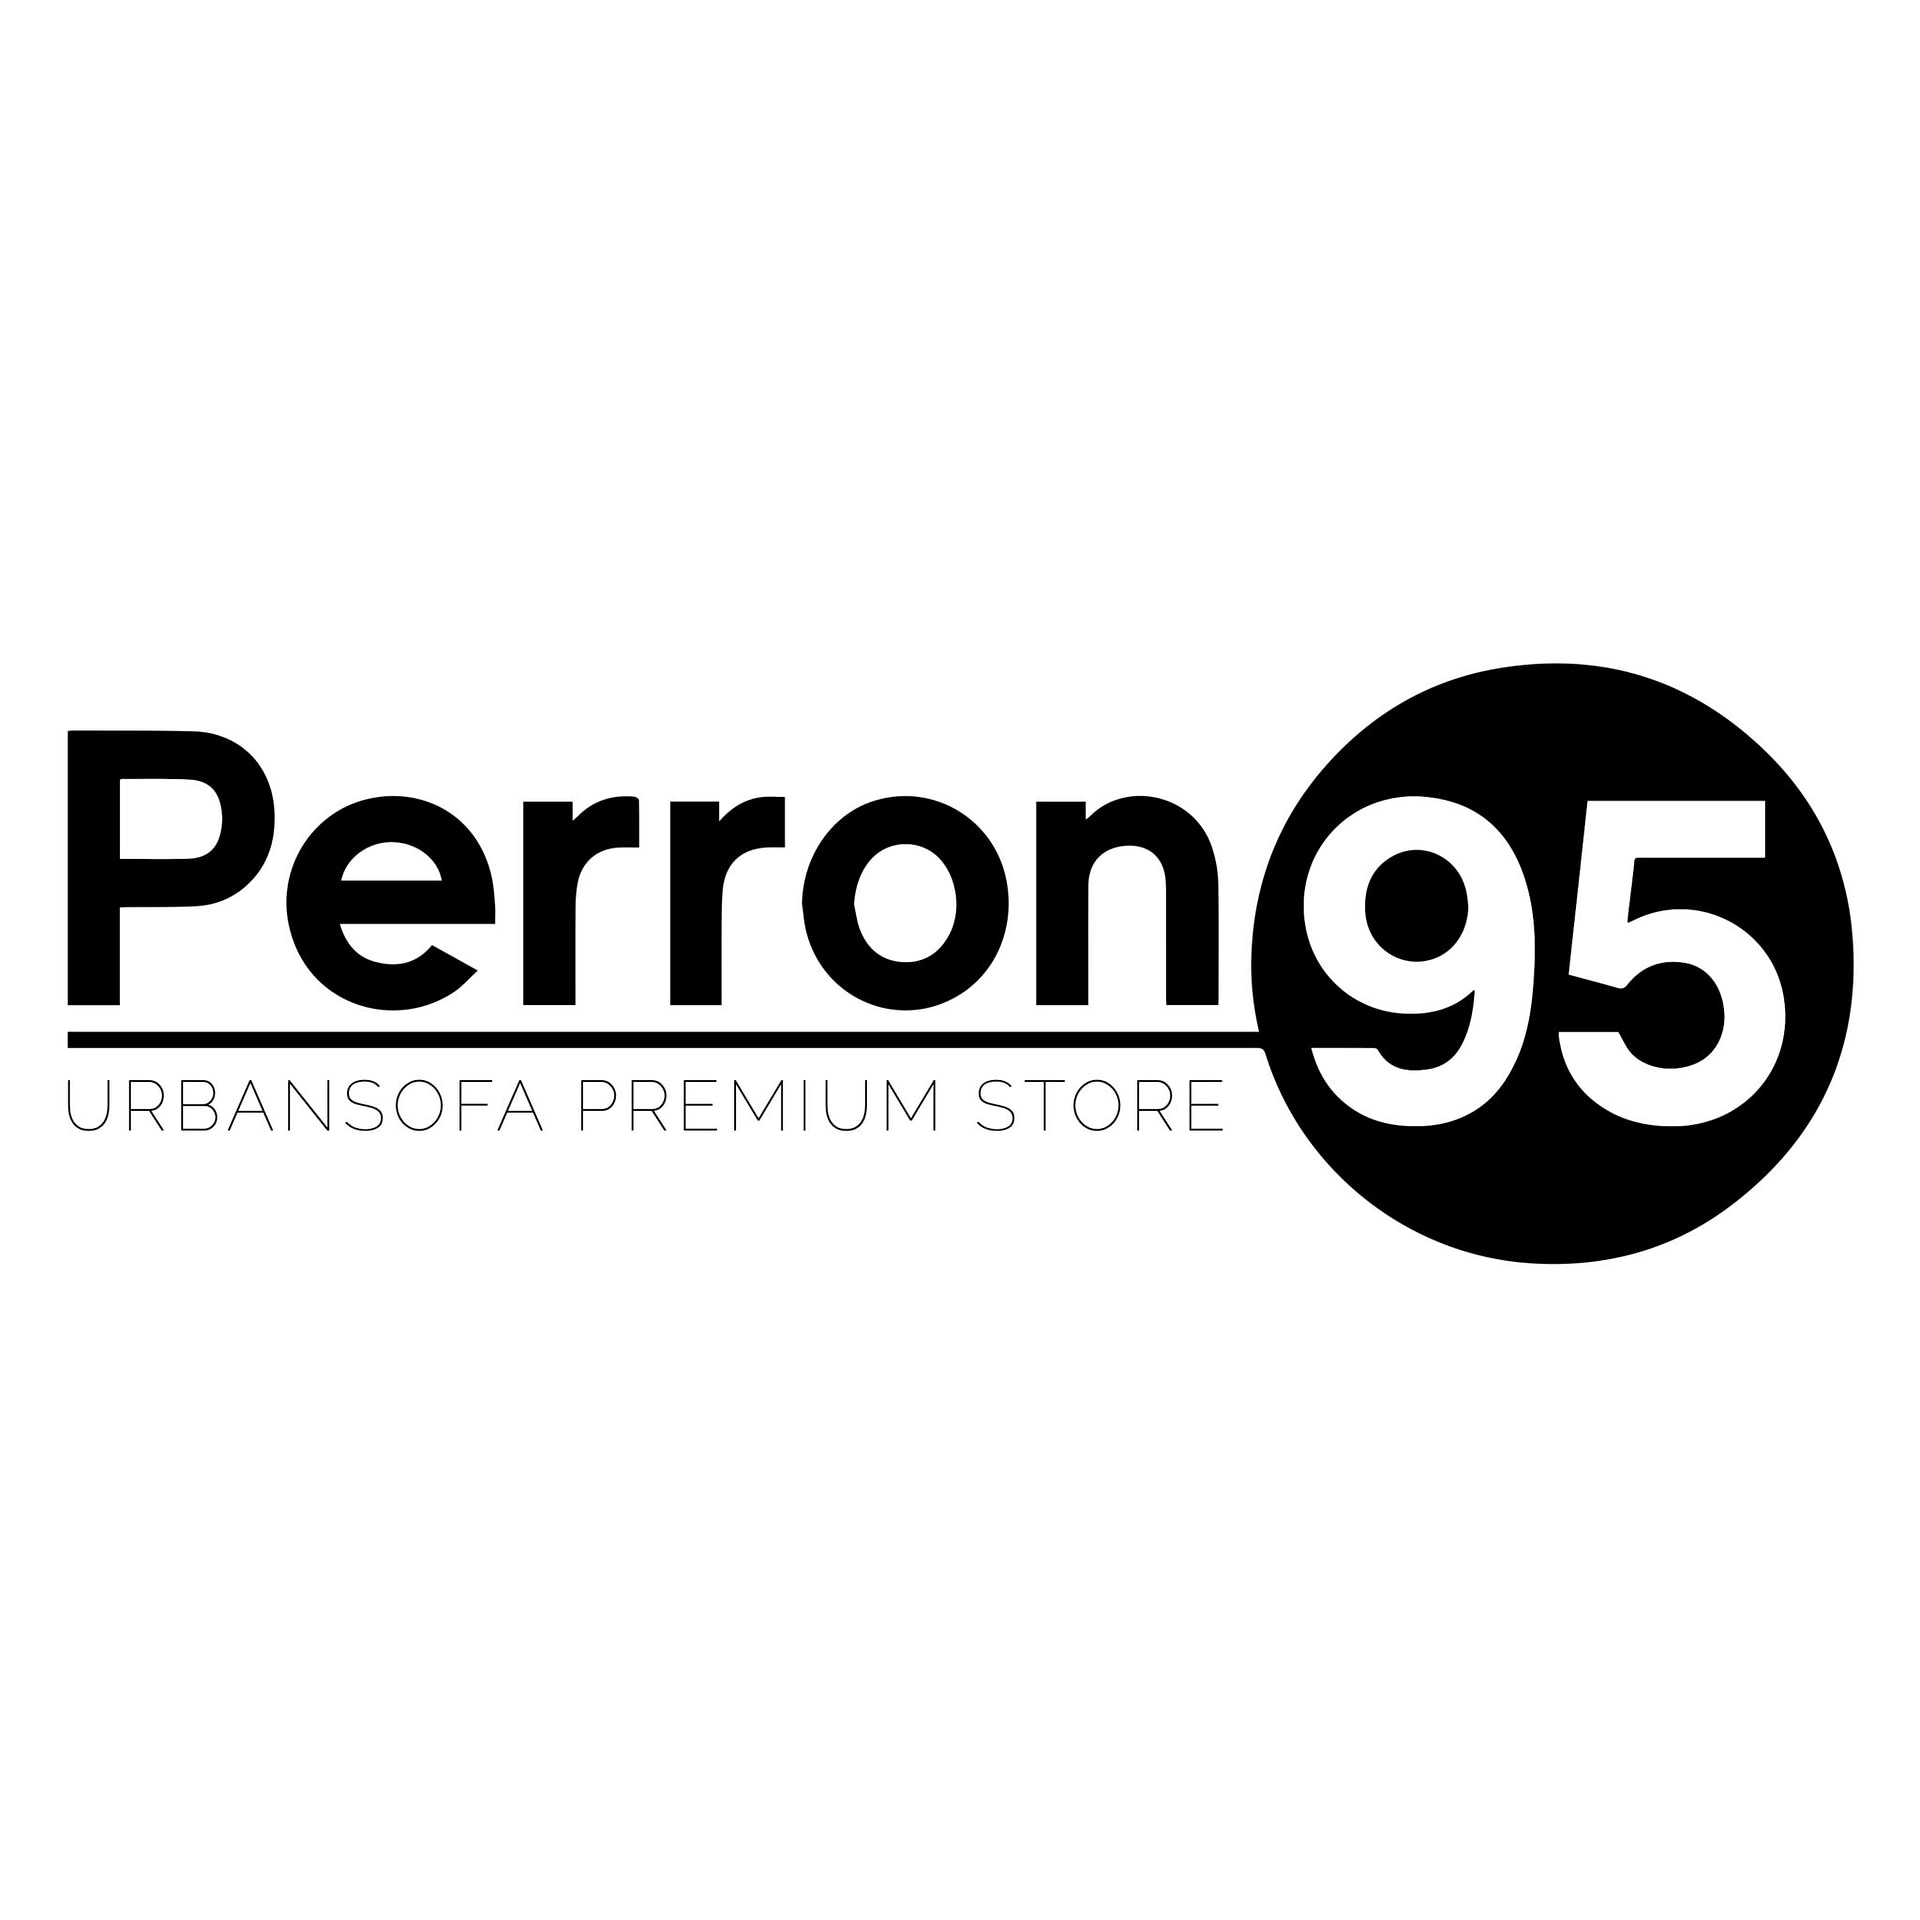 Perron 95